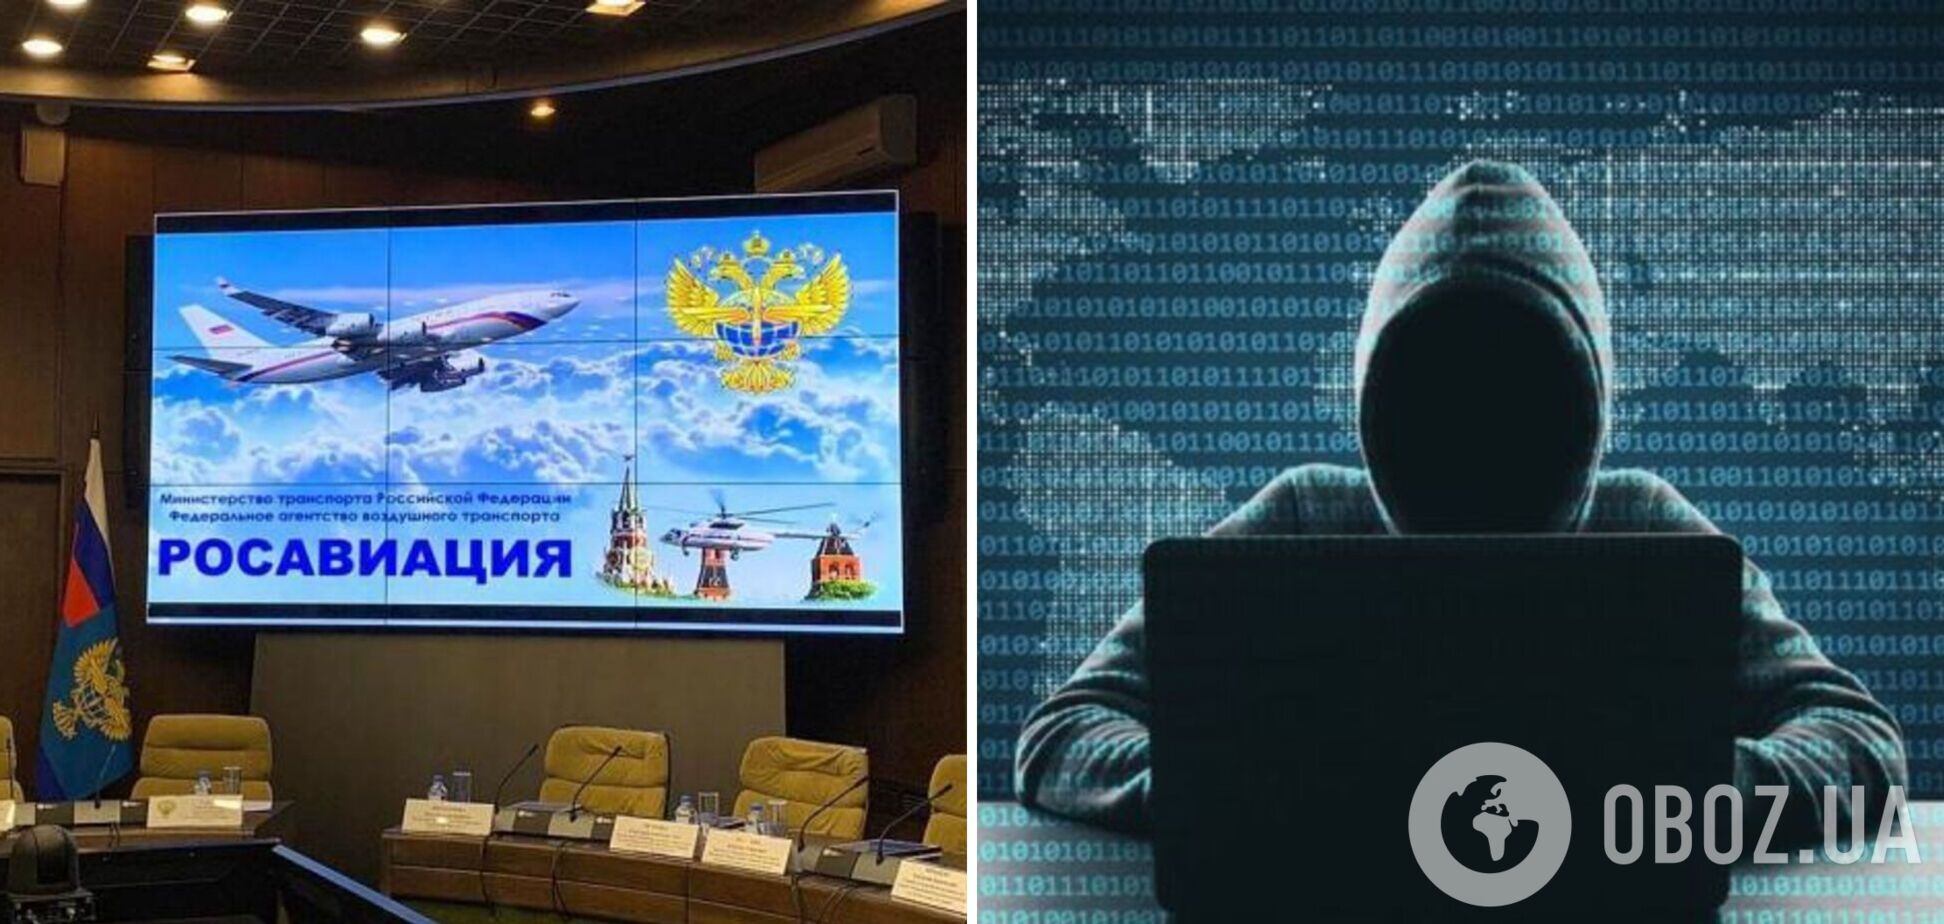 Украинка взломала IT-структуру Росавиации и уехала из РФ: была потеряна 'важнейшая информация' – СМИ